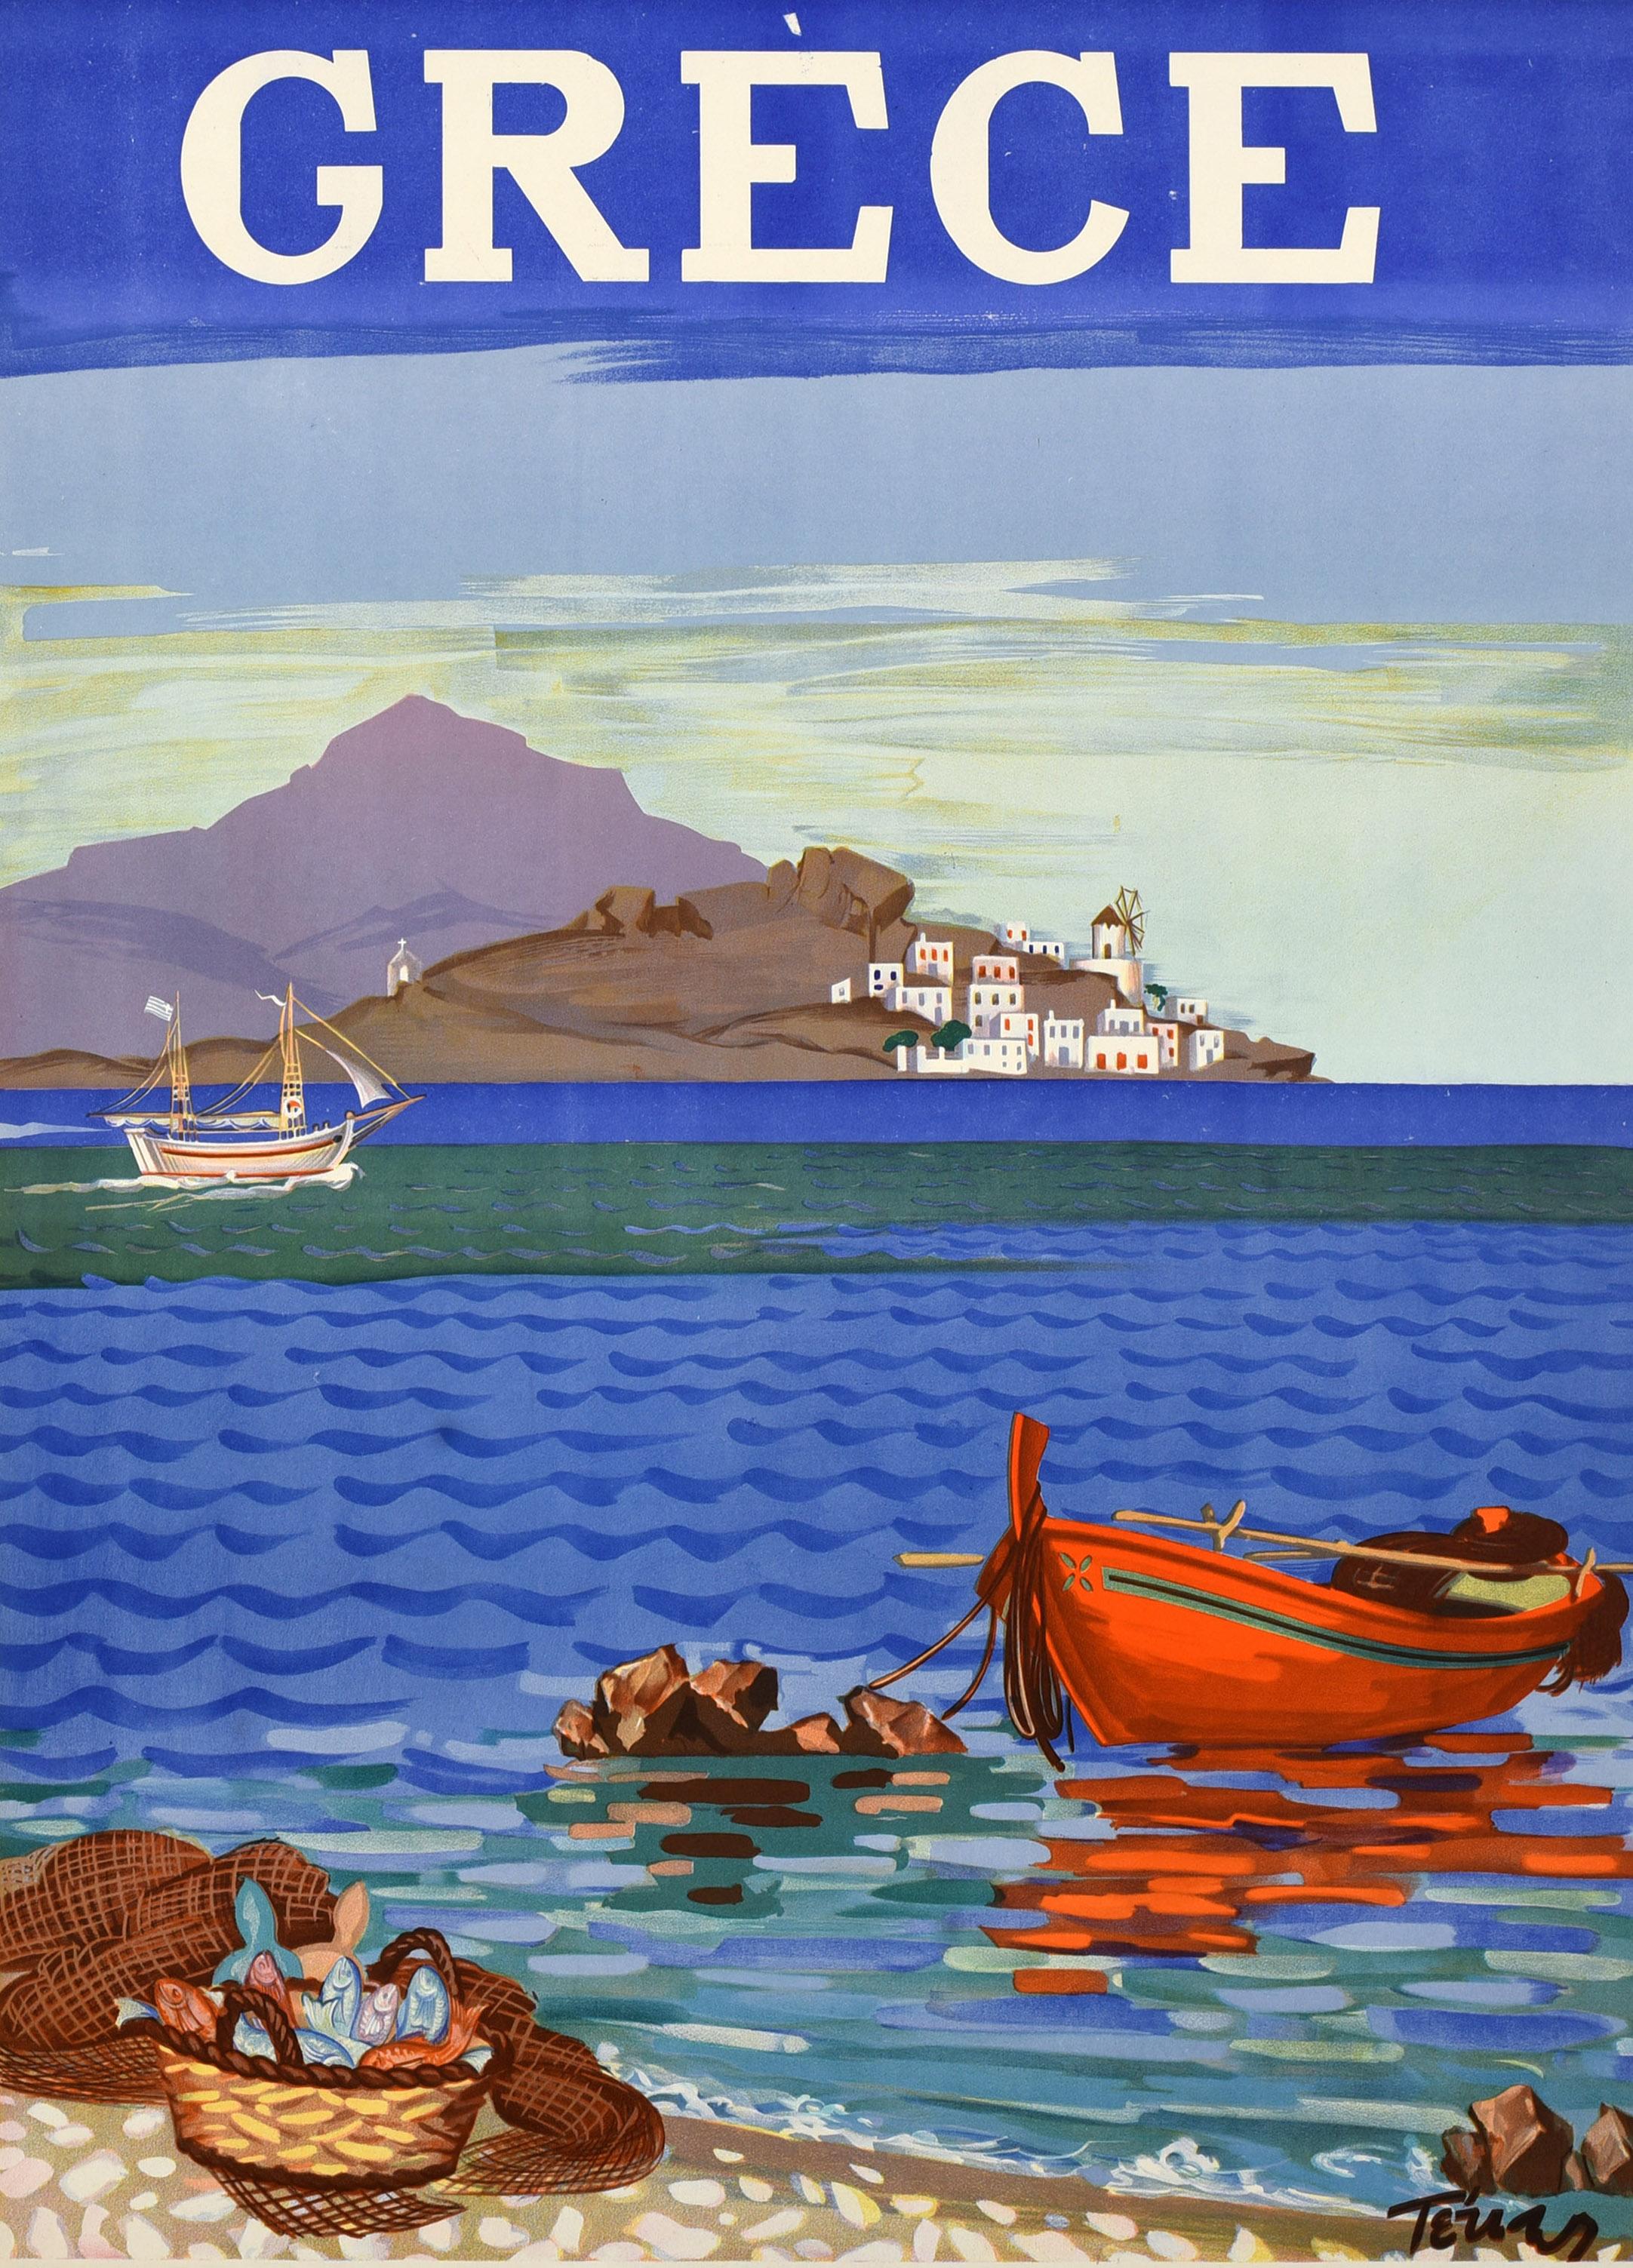 Affiche de voyage vintage originale - Greece Aegean Sea Coastline / Grece Littoral de la mer egee - représentant un bateau à rames en bois amarré à un rocher et se reflétant dans l'eau près de filets de pêche et d'un panier de poissons sur la plage